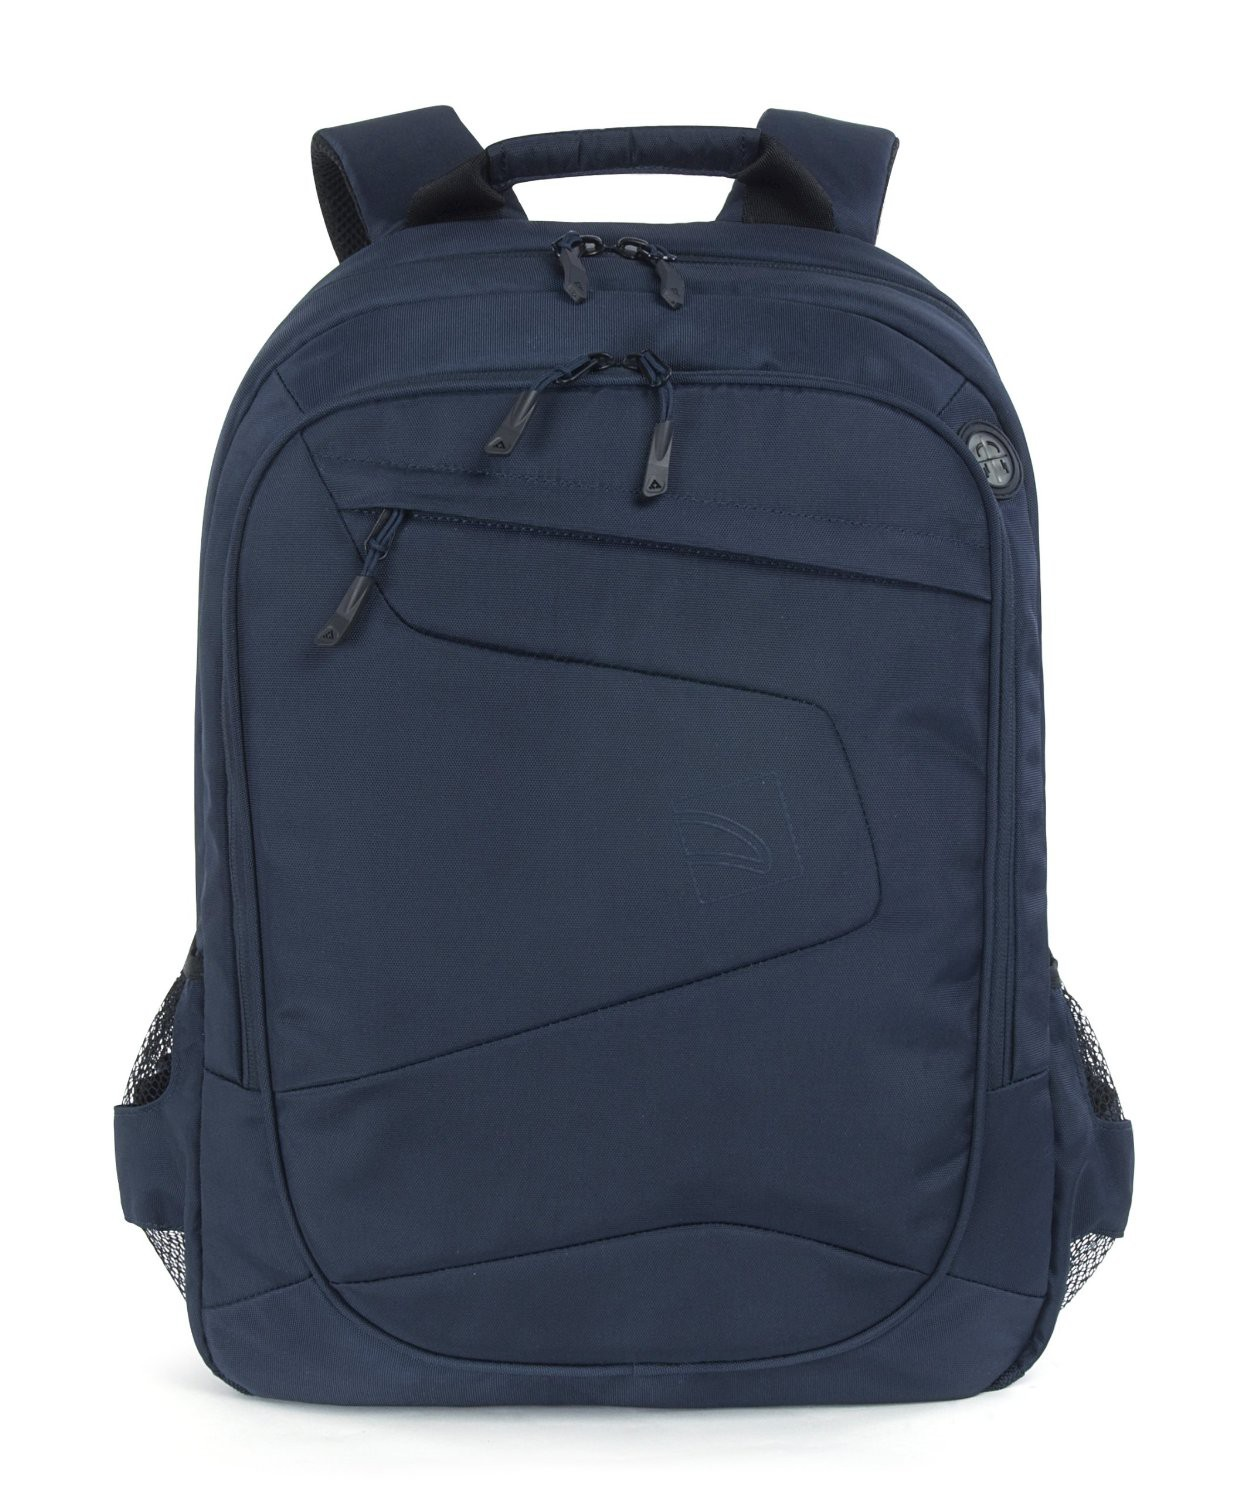 TUCANO Lato Notebook Tasche Universal Blau Nylon, für Rucksack